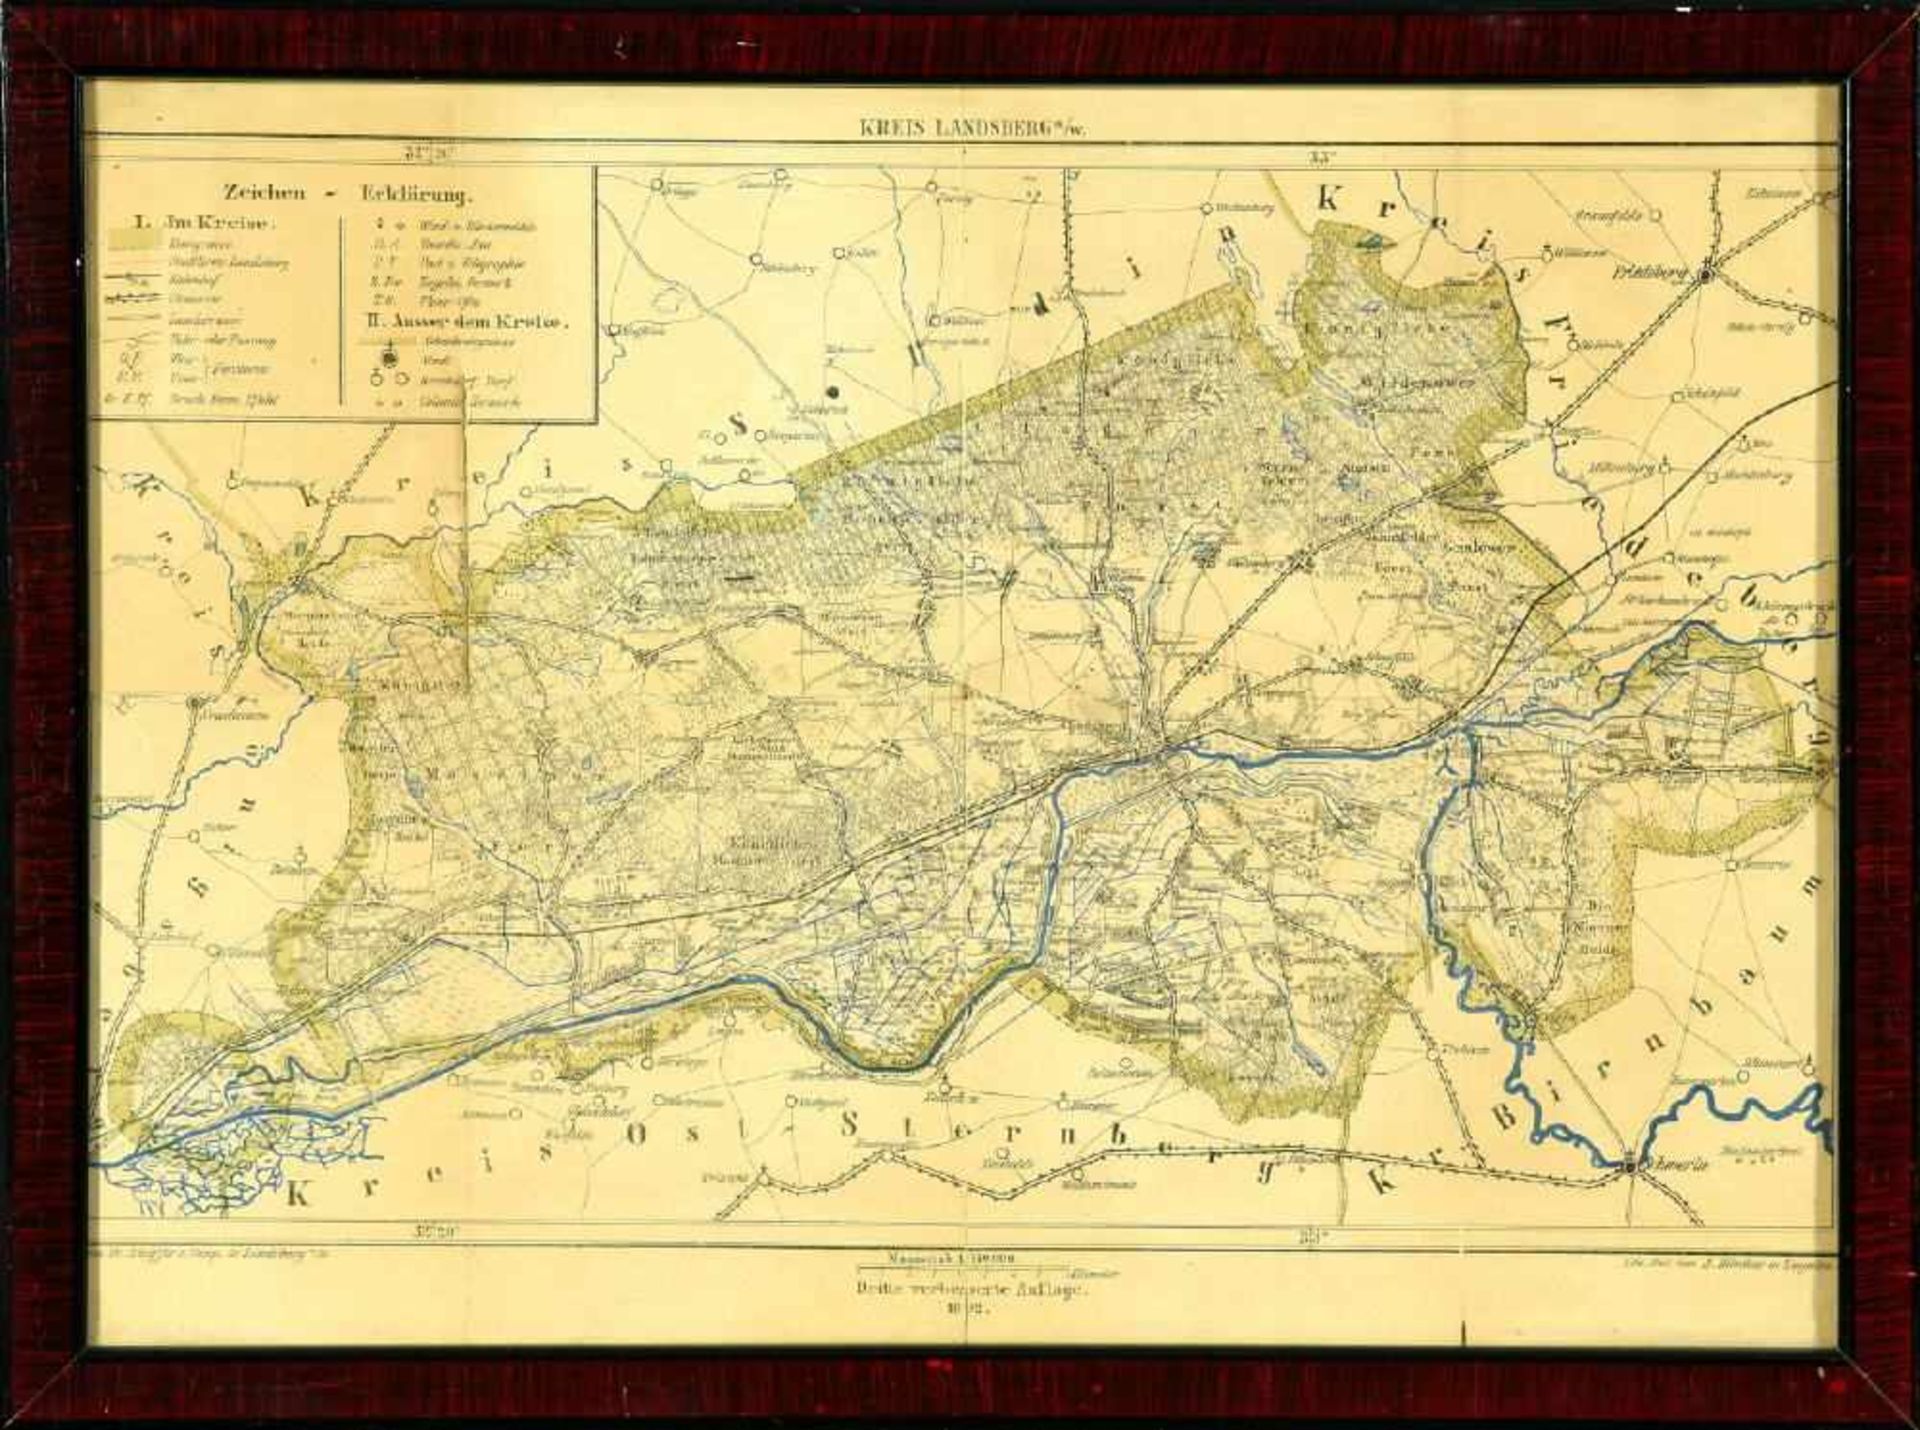 Landkarte "Kreis Landsberg a.W."